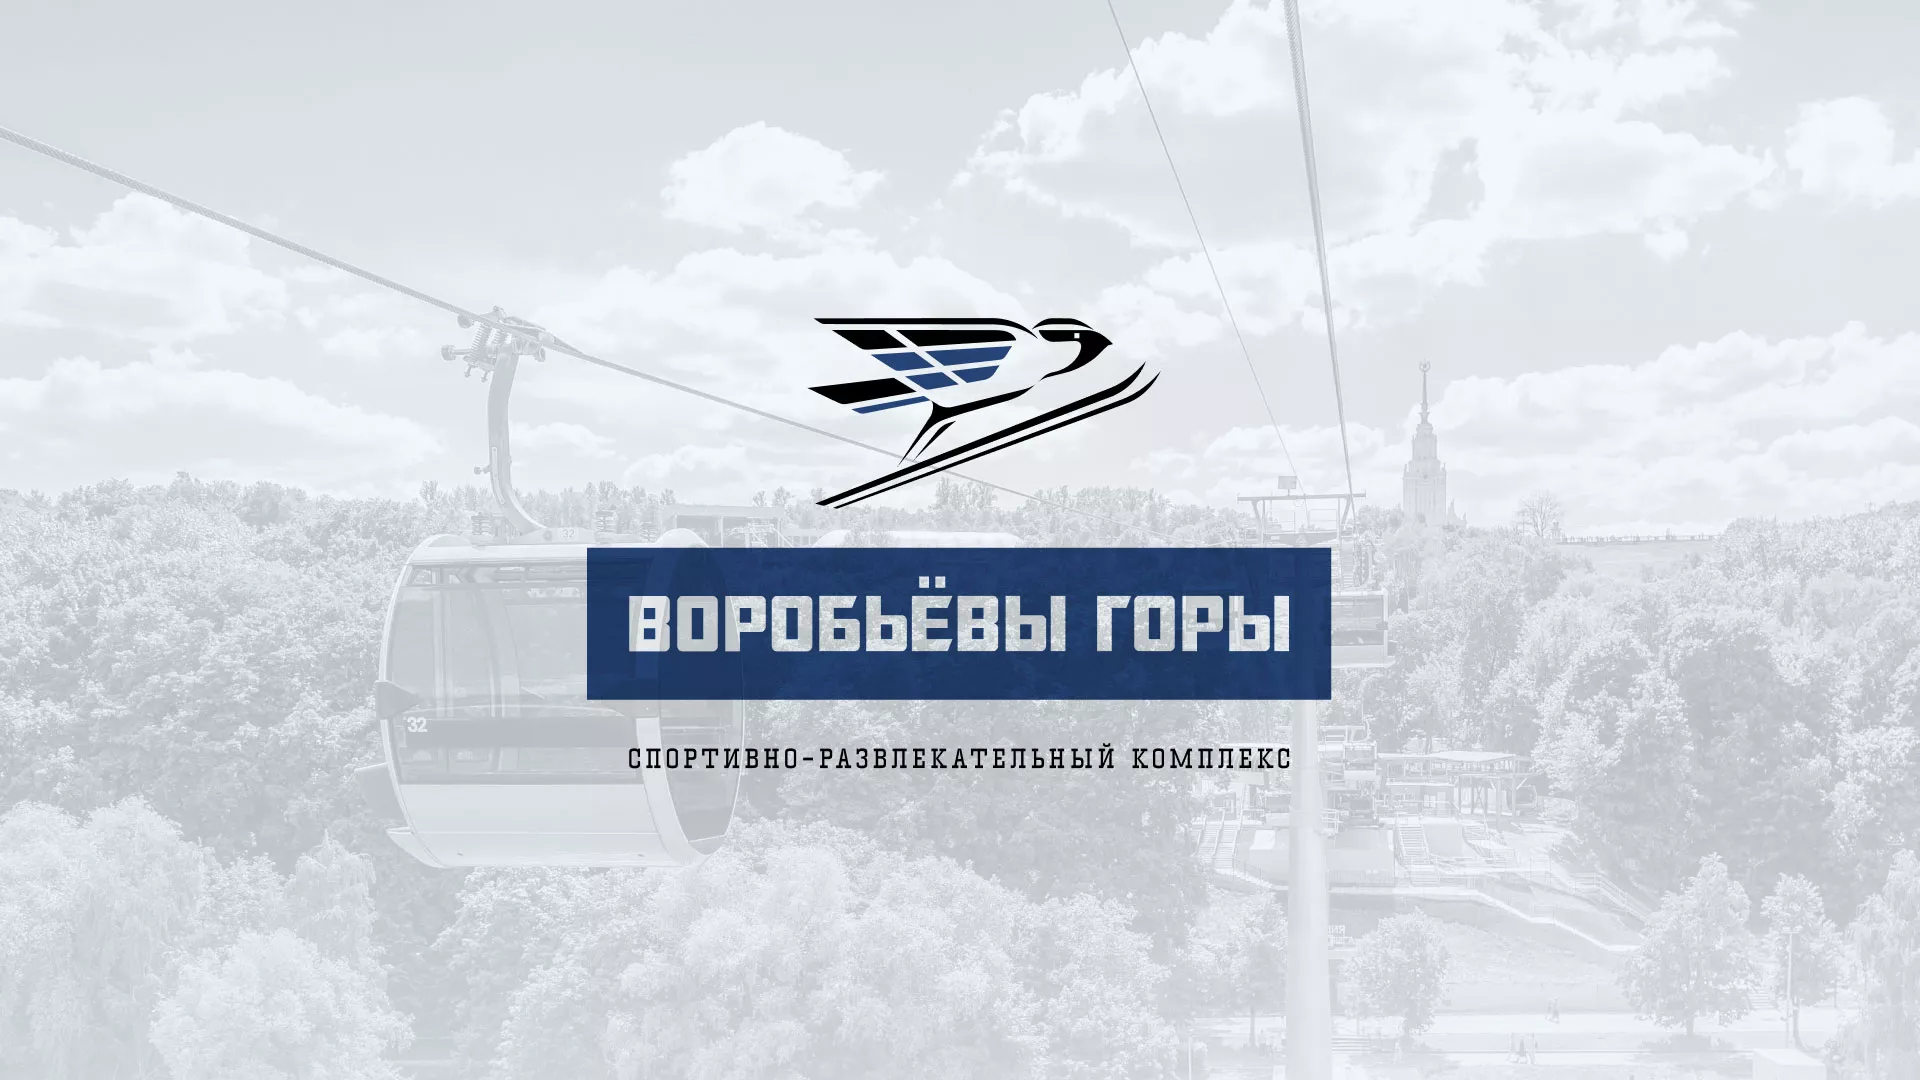 Разработка сайта в Кропоткине для спортивно-развлекательного комплекса «Воробьёвы горы»